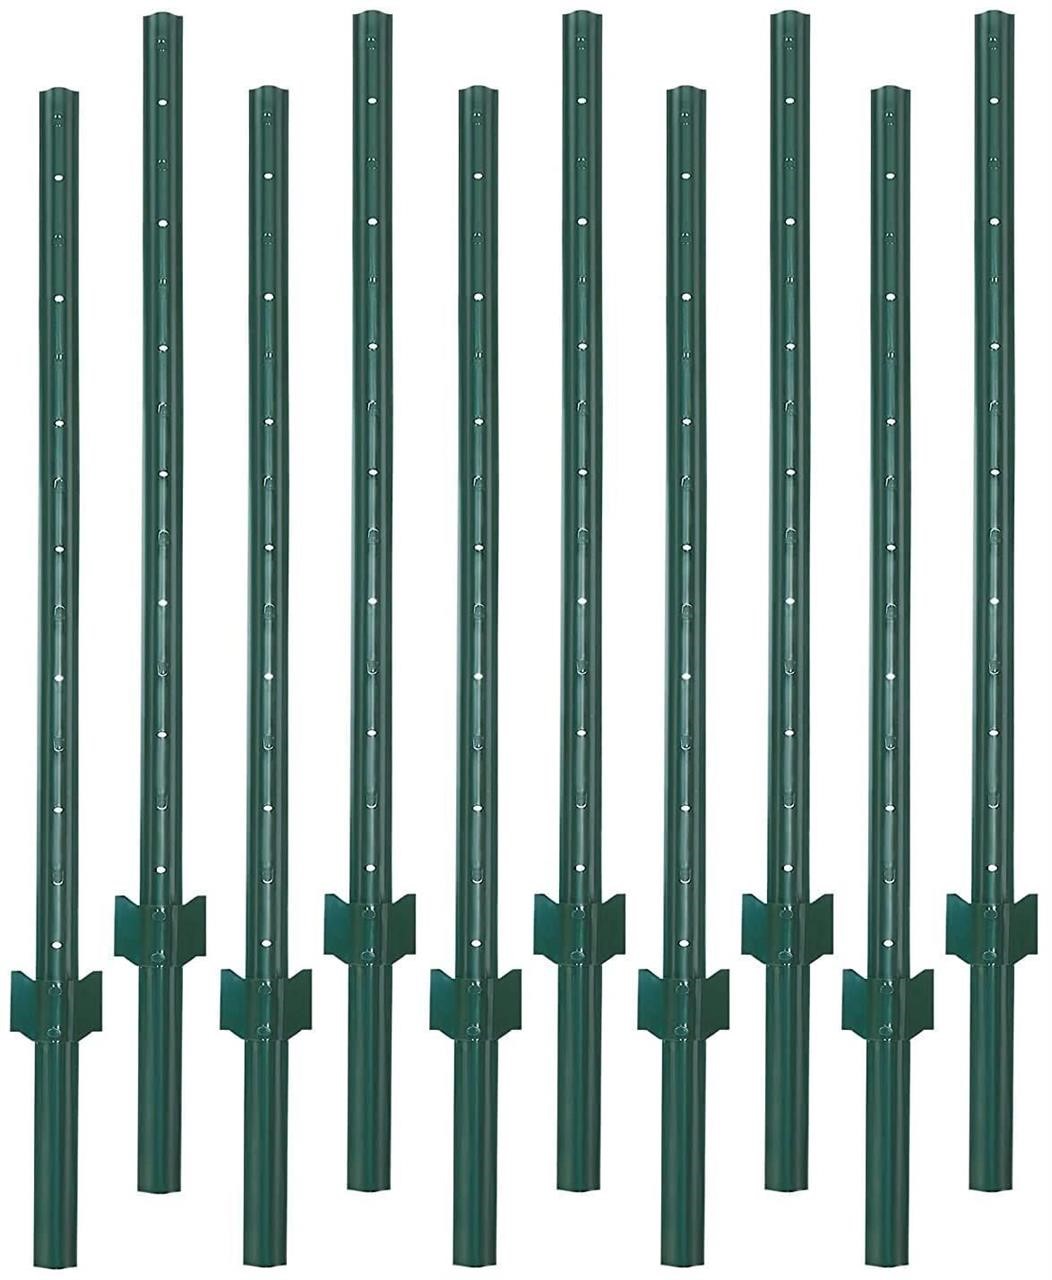 $105 - VASGOR 7 Feet Sturdy Duty Metal Fence Post